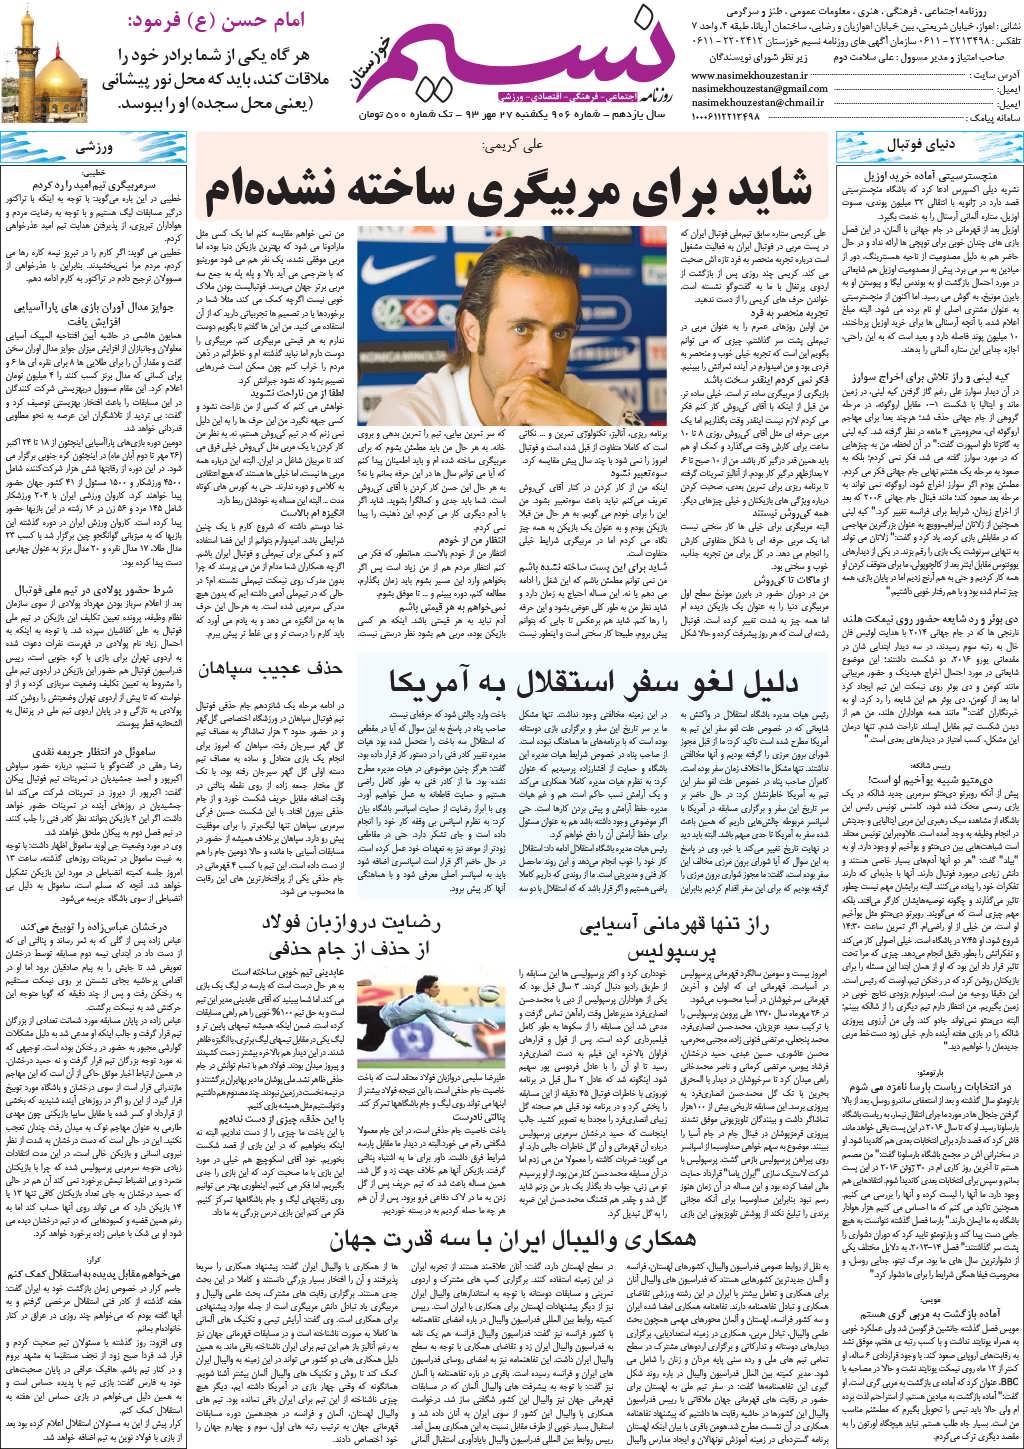 صفحه آخر روزنامه نسیم خوزستان شماره ۸۱۶